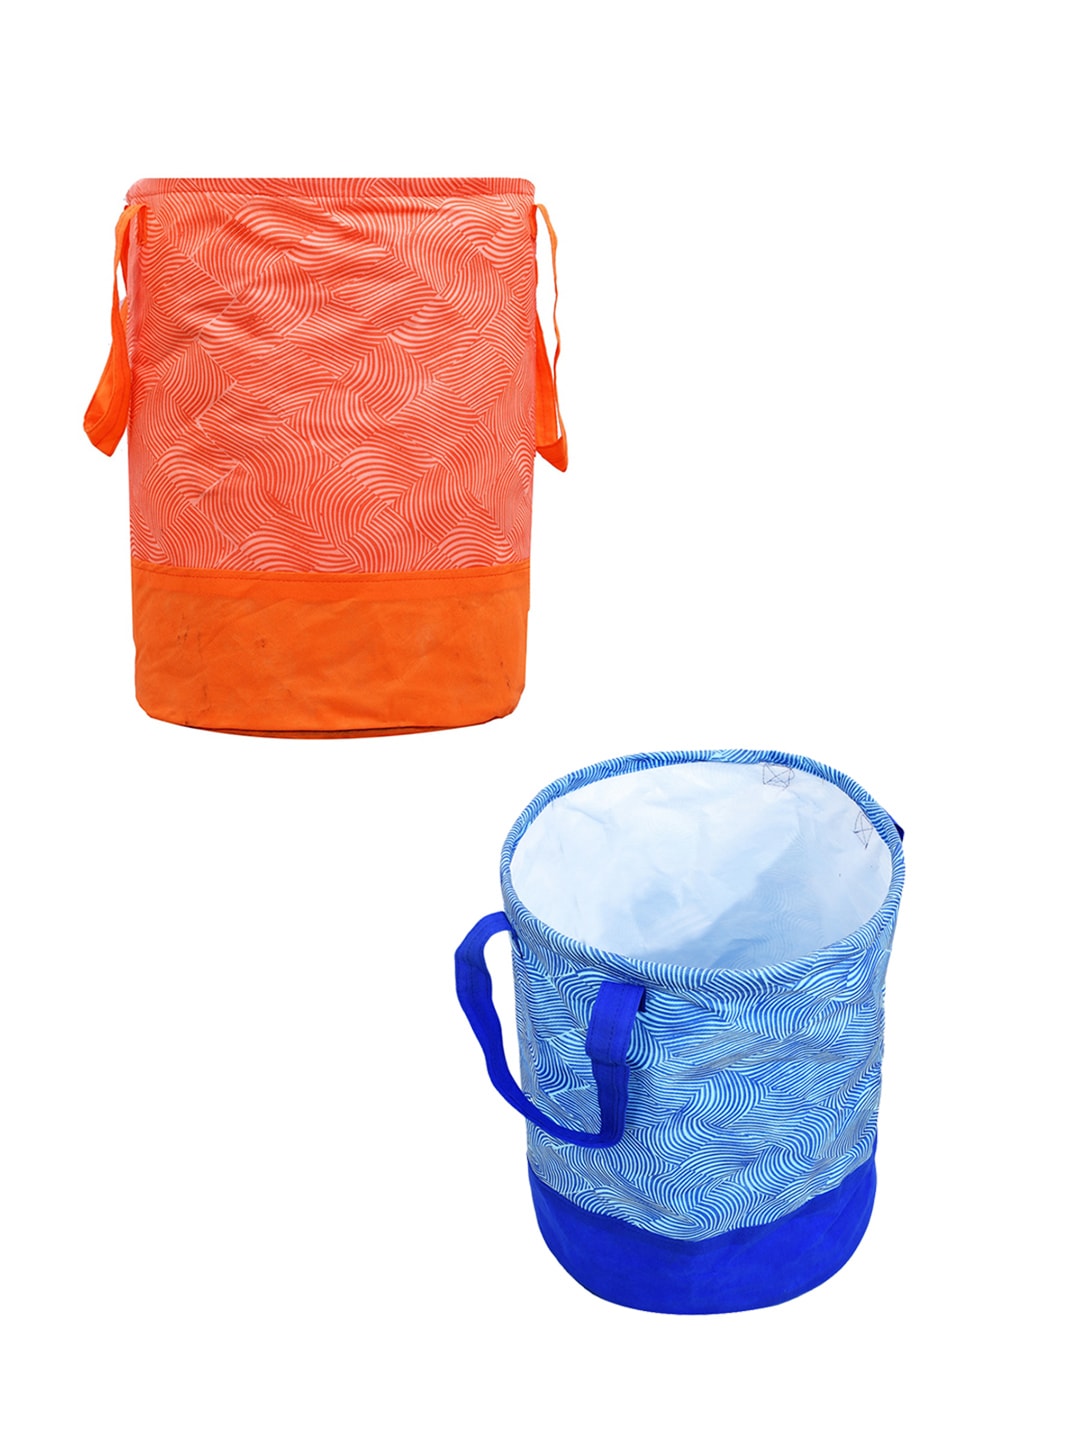 Kuber Industries Set Of 2 Blue & Orange Printed Waterproof Canvas Laundry Bags Price in India